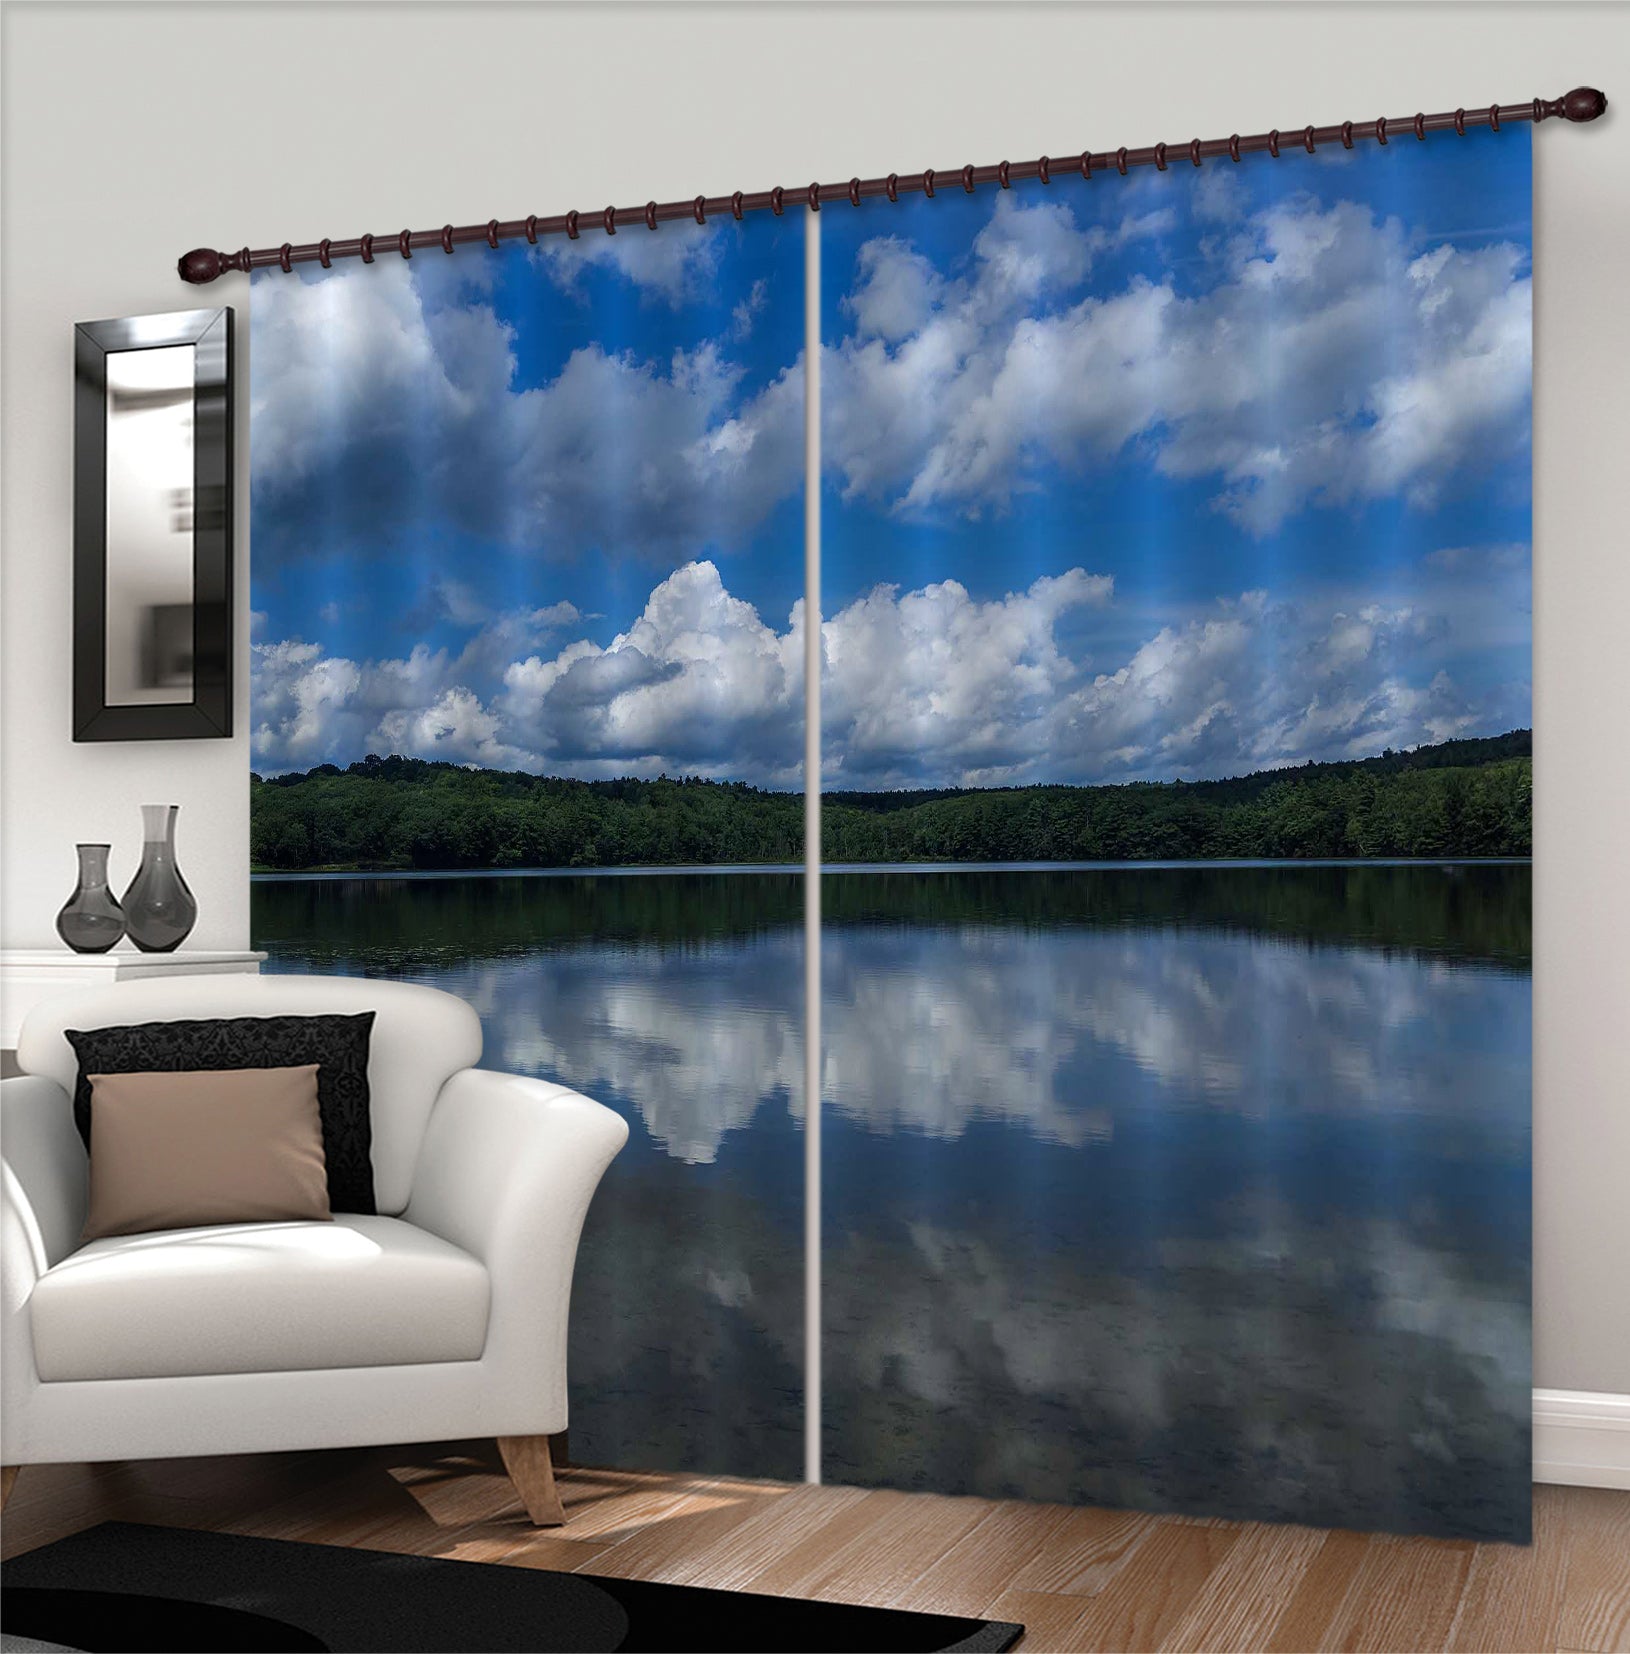 3D Cloud Lake 004 Jerry LoFaro Curtain Curtains Drapes